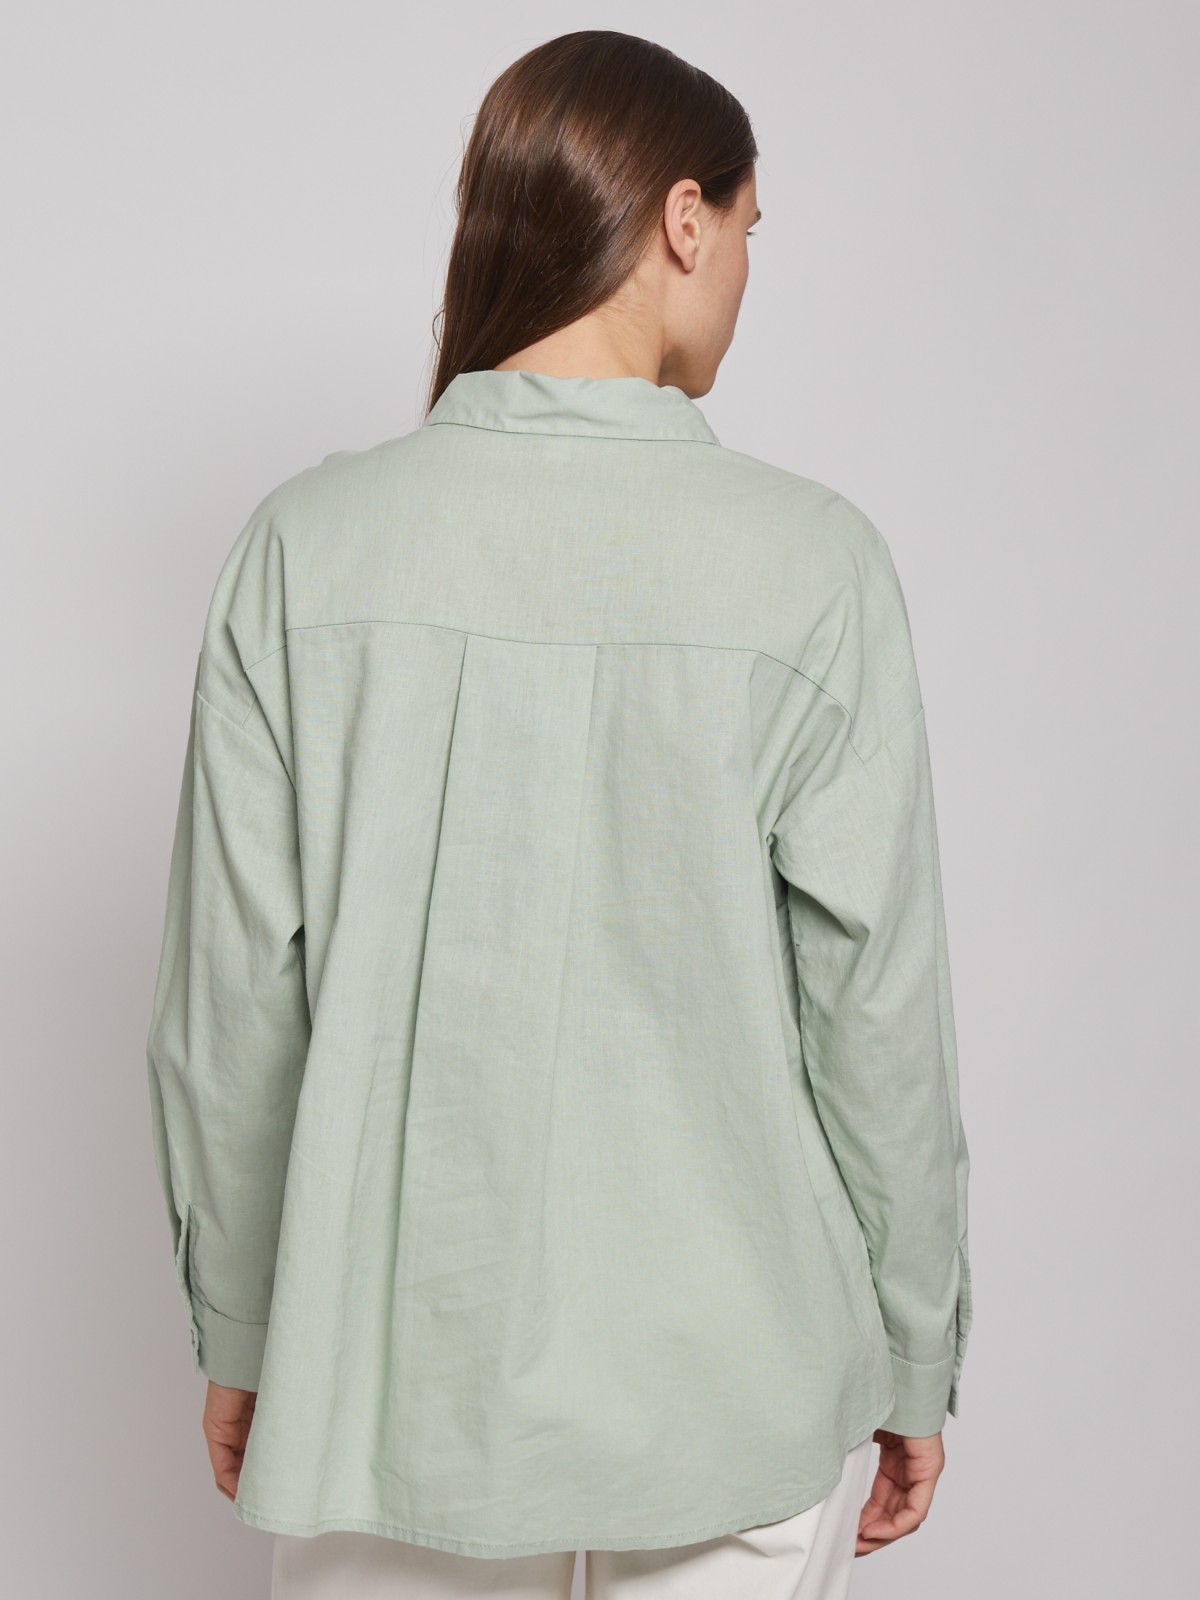 Рубашка с длинным рукавом zolla 022221191033, цвет светло-зеленый, размер XS - фото 6